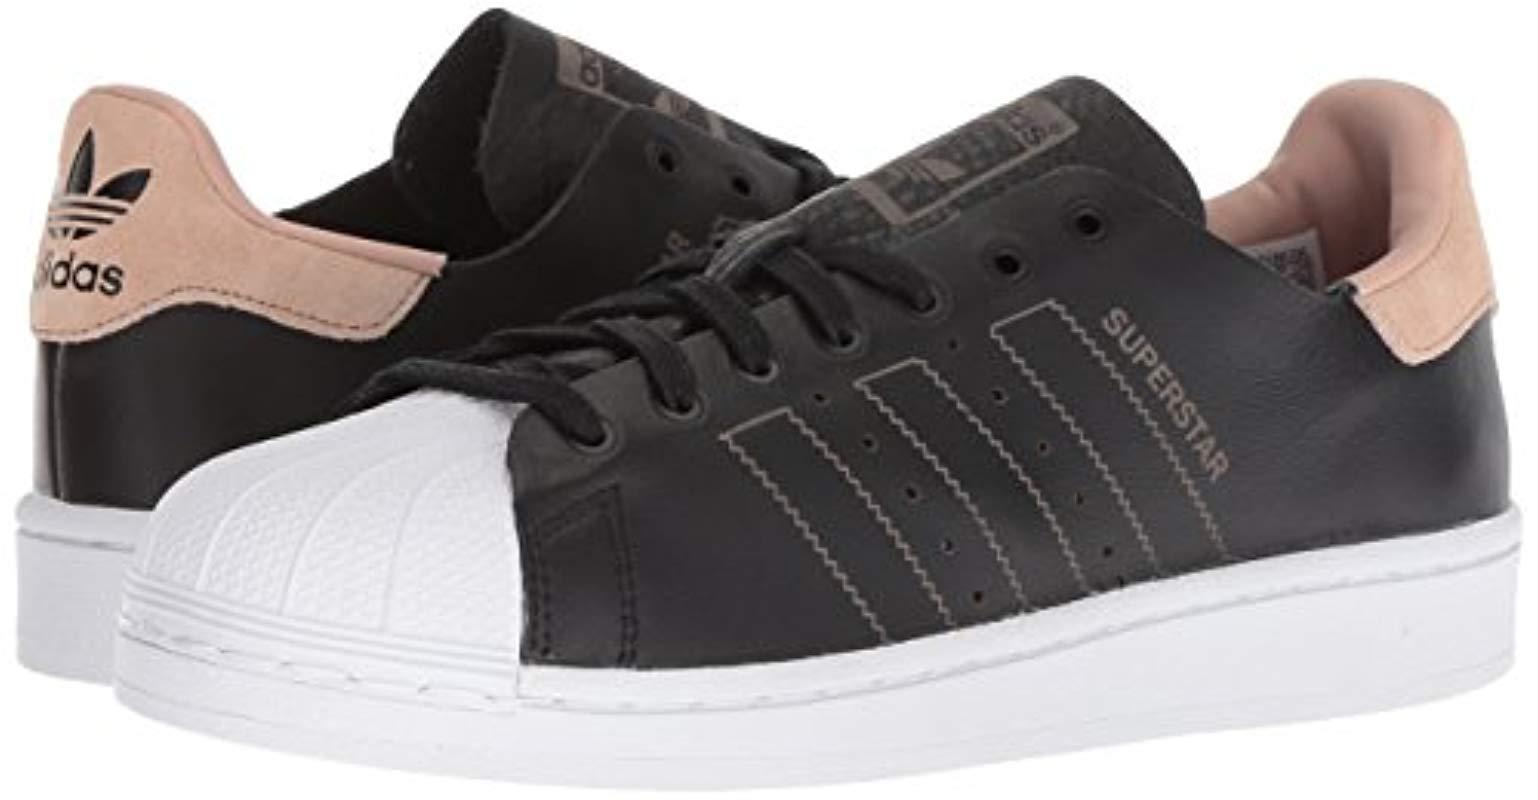 adidas Originals Leather Superstar Decon W in Black/Black/White ...